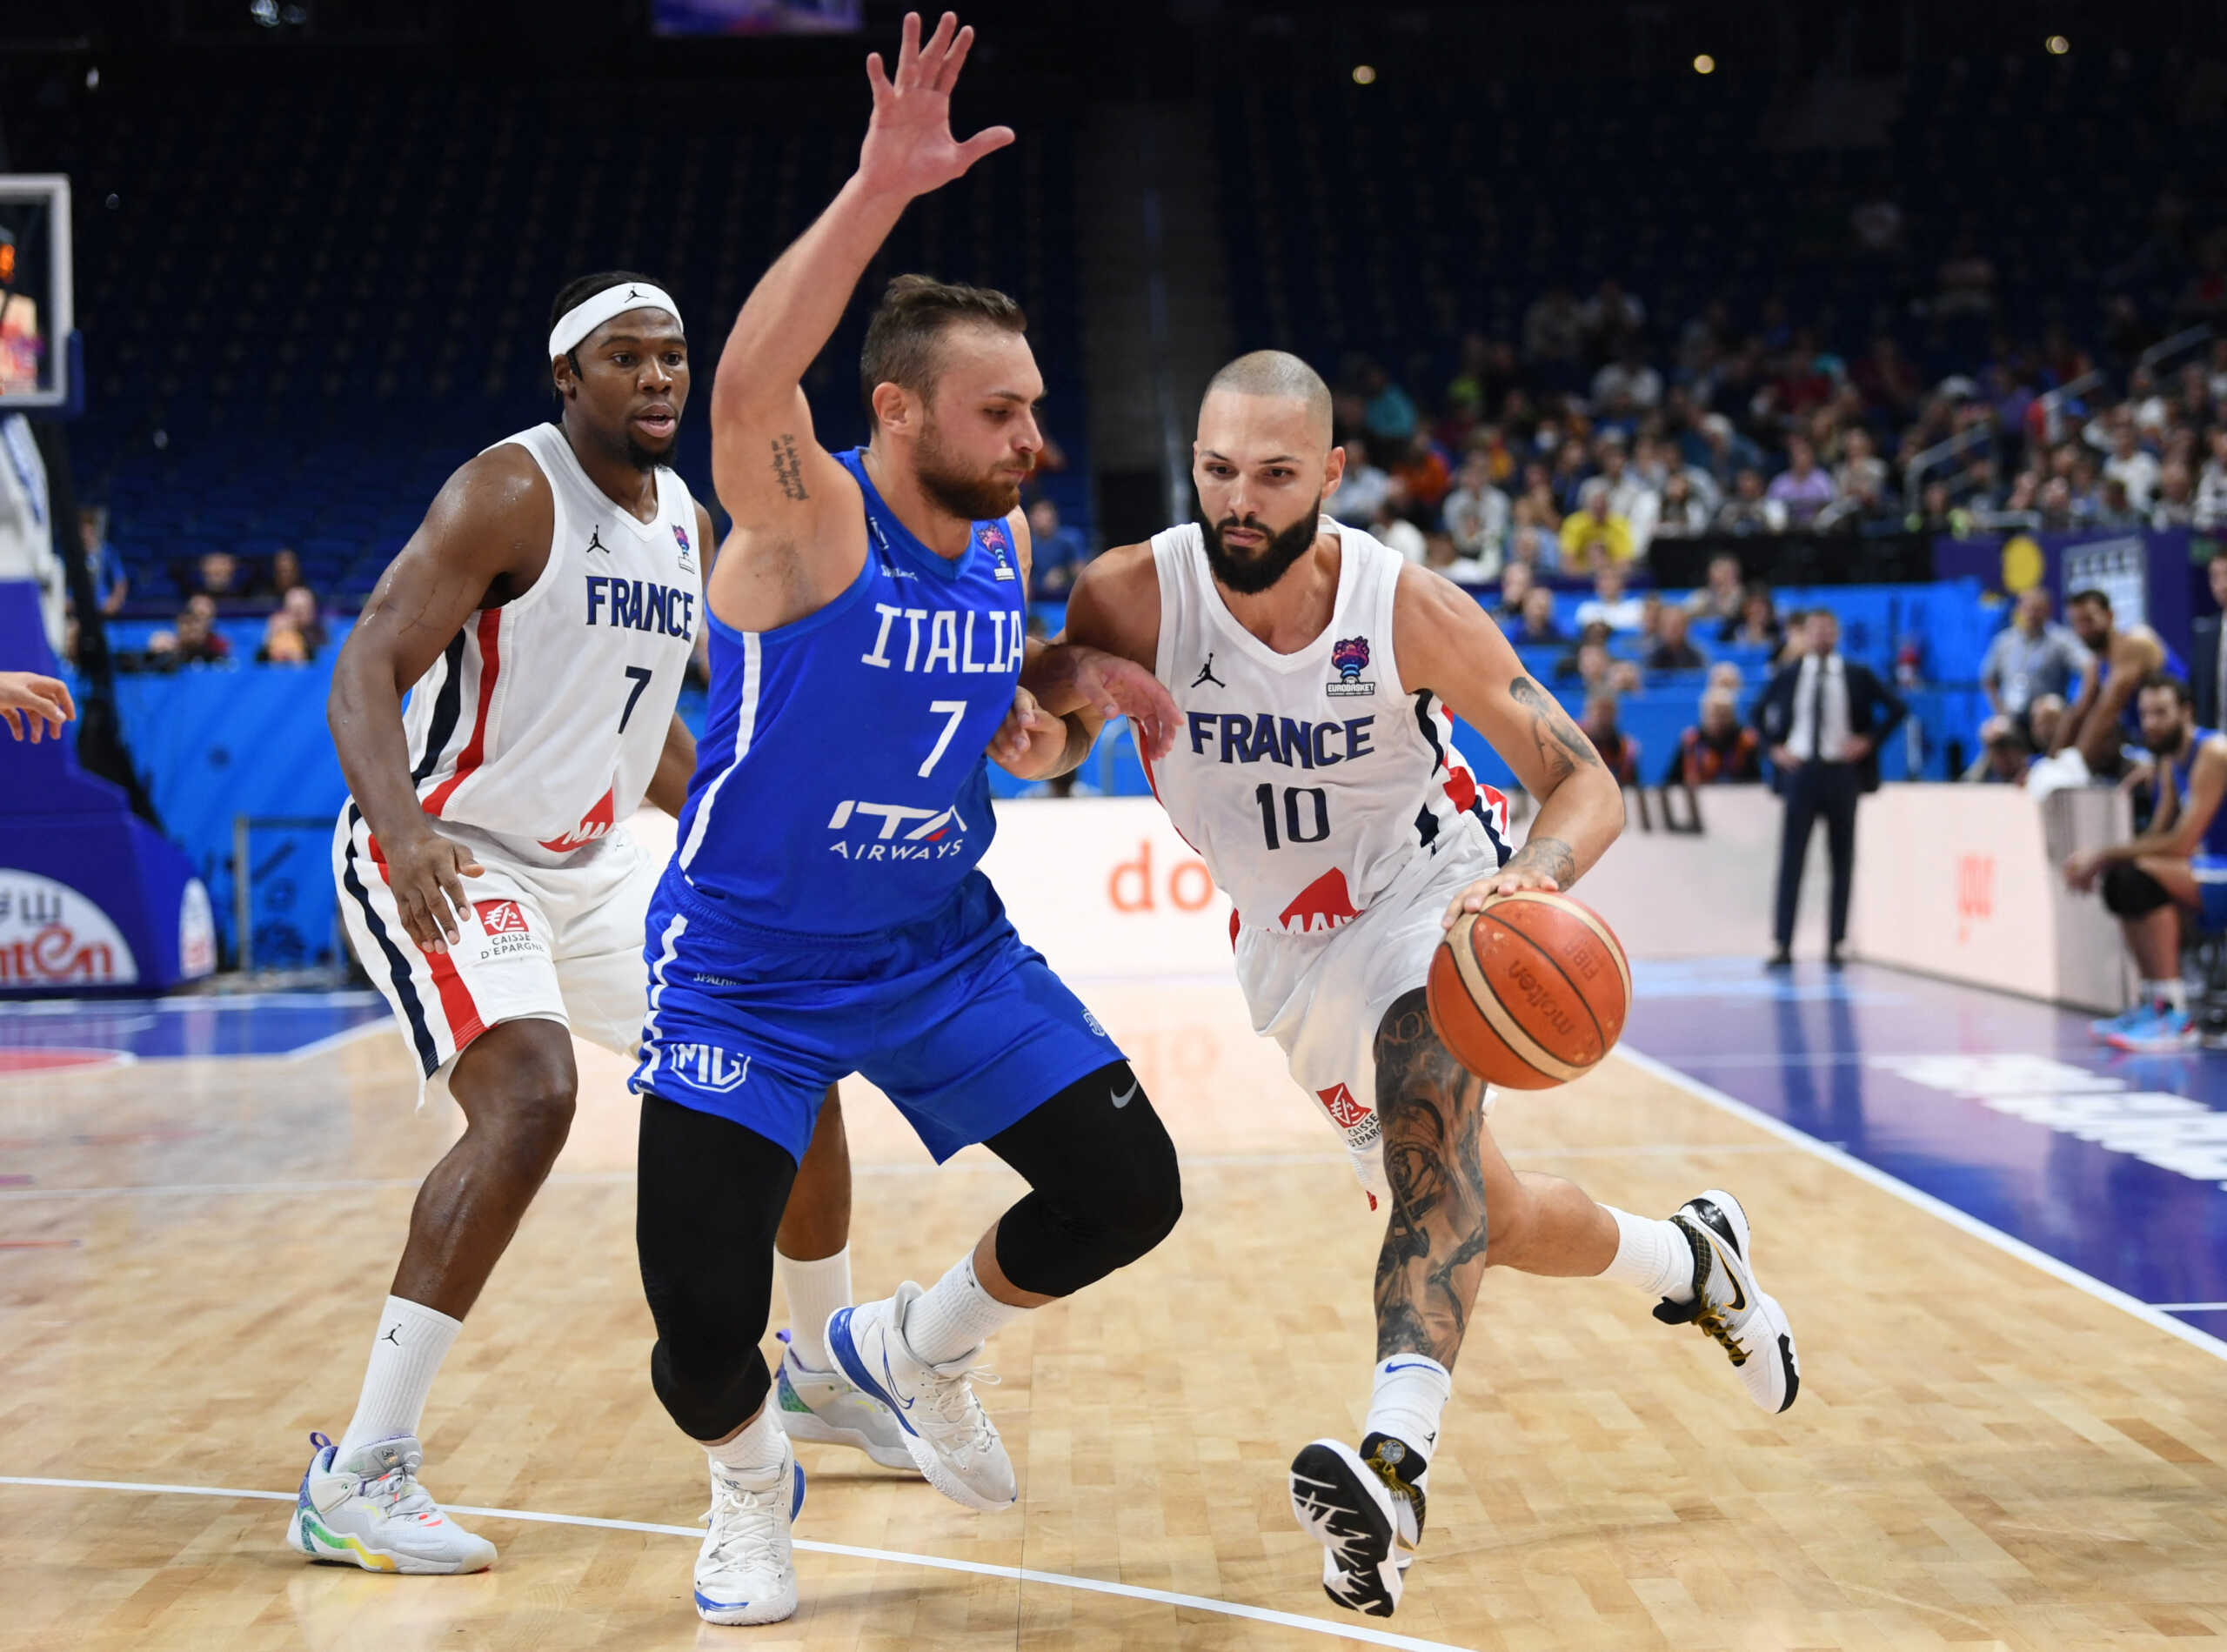 Eurobasket 2022, Γαλλία – Ιταλία 93-85: Πρόκριση θρίλερ στα ημιτελικά για τους τρικολόρ με «γαλλικό» κλειδί τις χαμένες βολές του Φοντέκιο